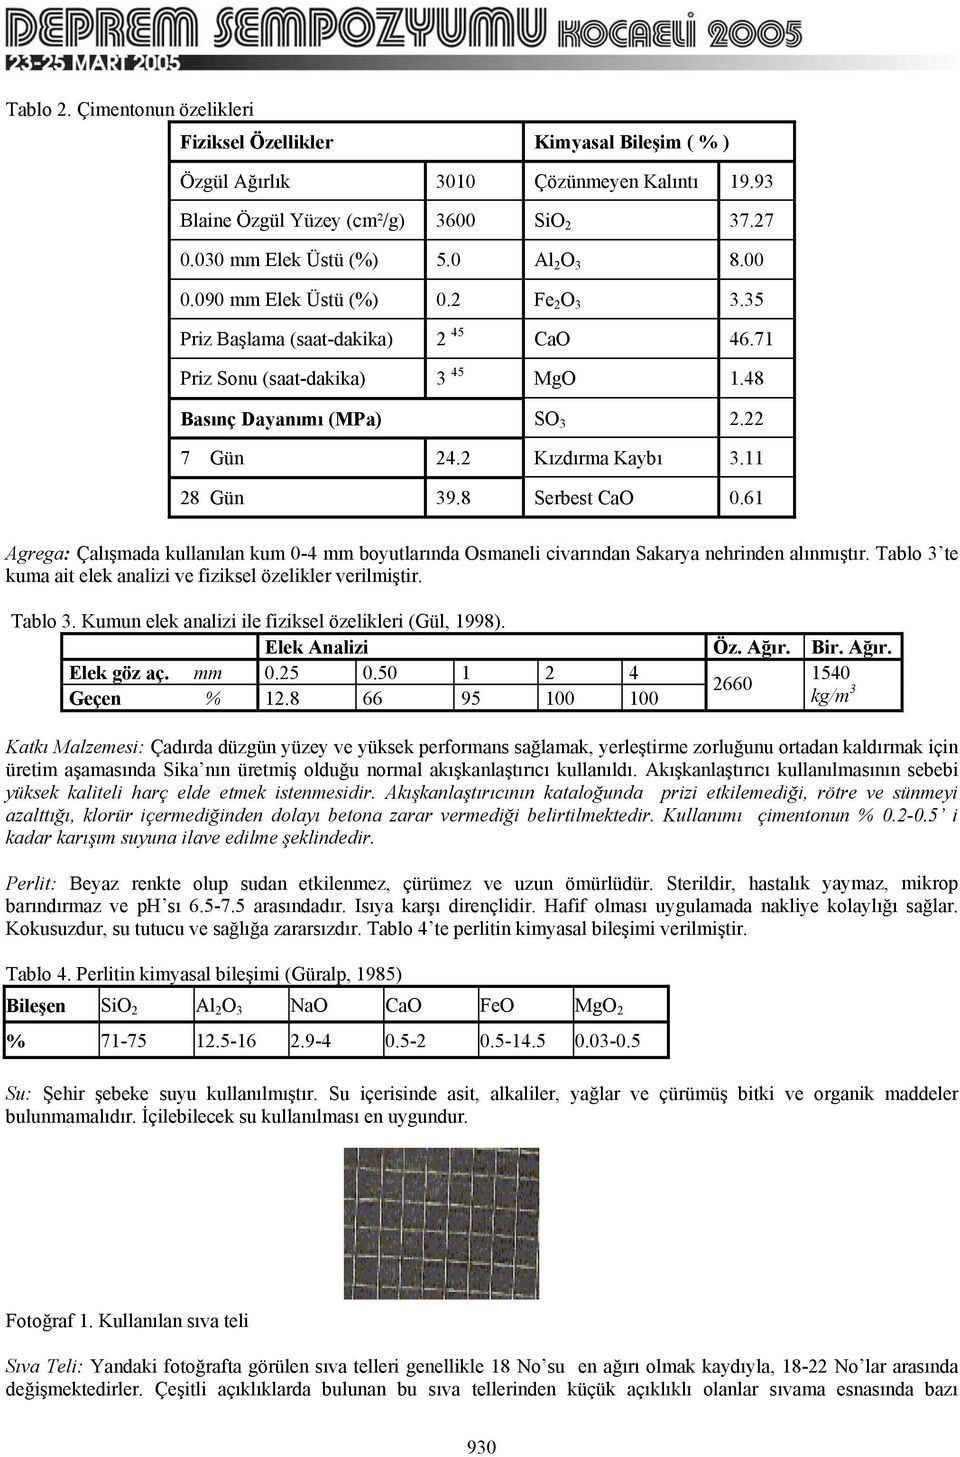 8 Serbest CaO 0.61 Agrega: Çalışmada kullanılan kum 0-4 mm boyutlarında Osmaneli civarından Sakarya nehrinden alınmıştır. Tablo 3 te kuma ait elek analizi ve fiziksel özelikler verilmiştir. Tablo 3. Kumun elek analizi ile fiziksel özelikleri (Gül, 1998).